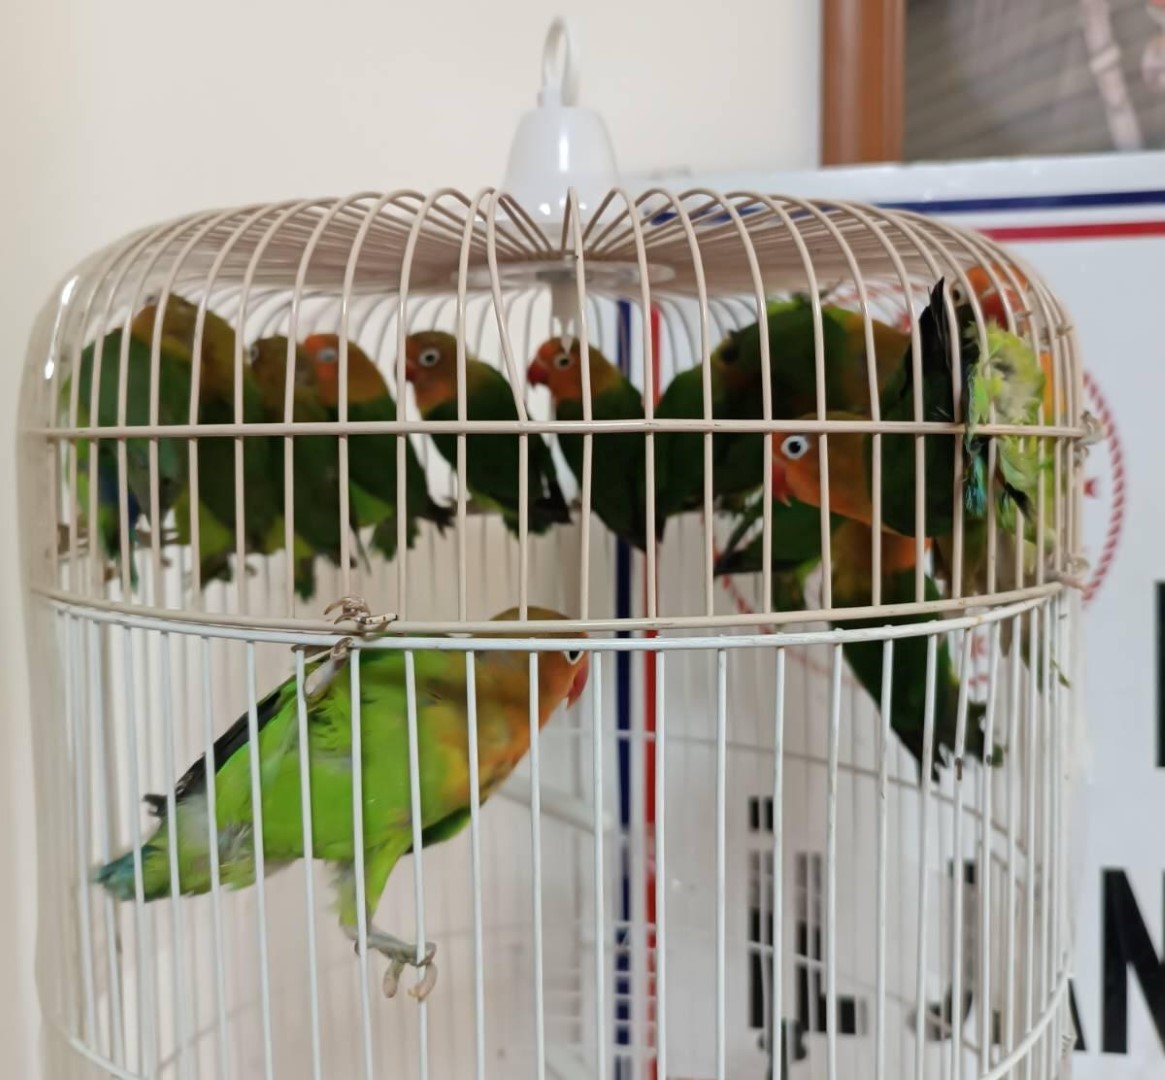 Salihli'de Satışı Yasak Papağan Ele Geçirildi (3)